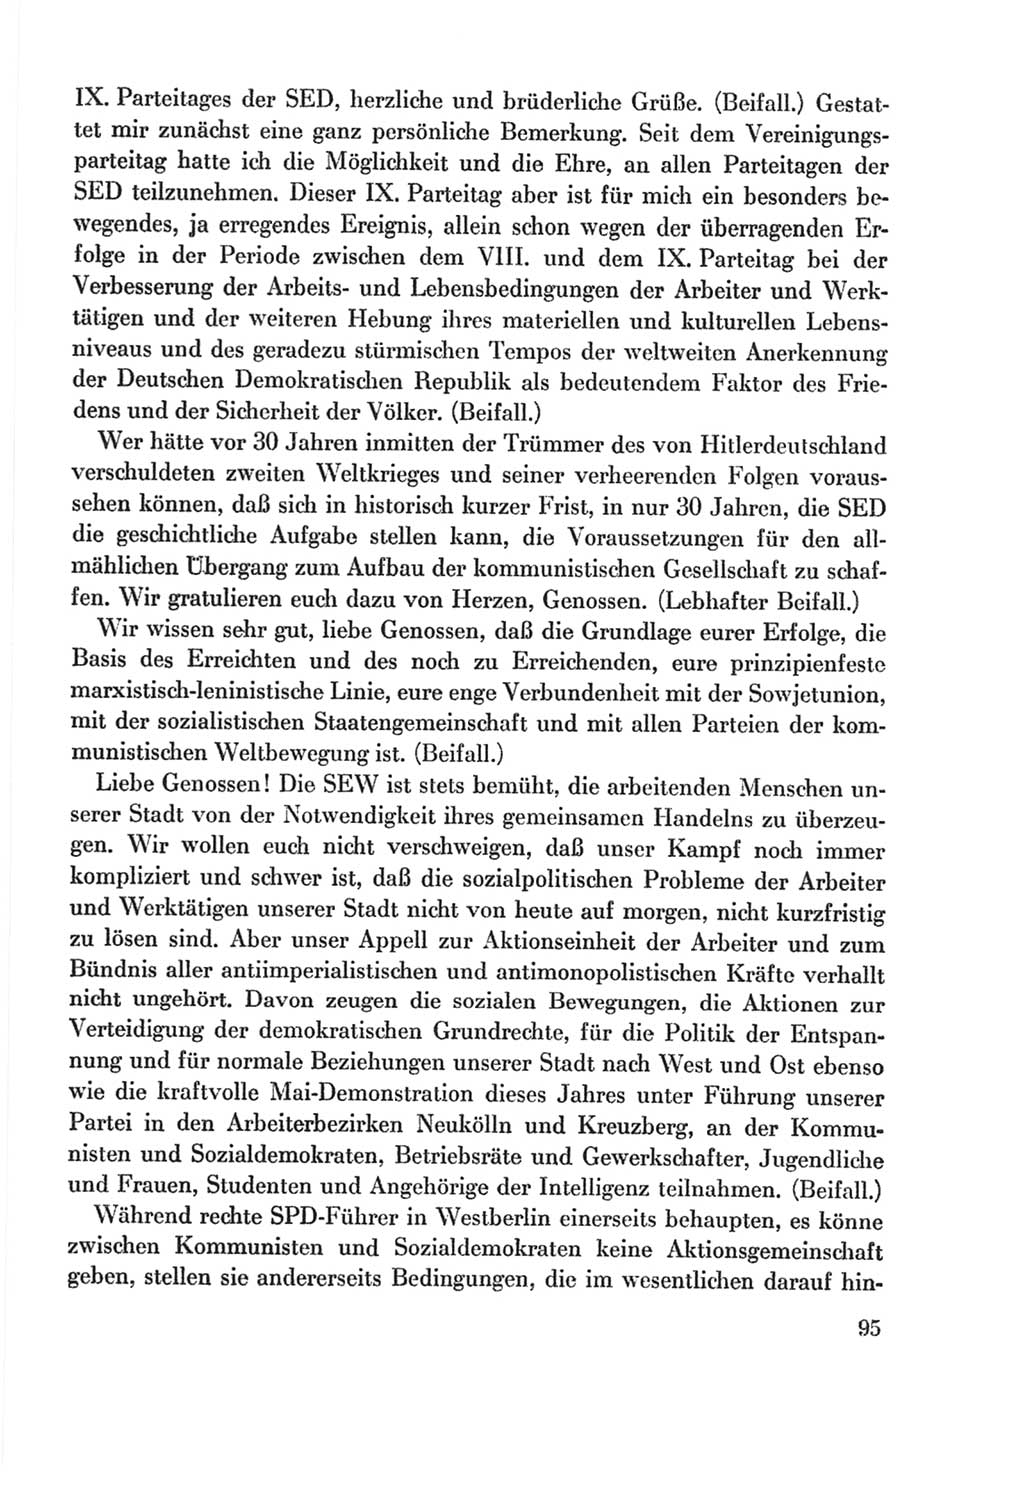 Protokoll der Verhandlungen des Ⅸ. Parteitages der Sozialistischen Einheitspartei Deutschlands (SED) [Deutsche Demokratische Republik (DDR)] 1976, Band 2, Seite 95 (Prot. Verh. Ⅸ. PT SED DDR 1976, Bd. 2, S. 95)